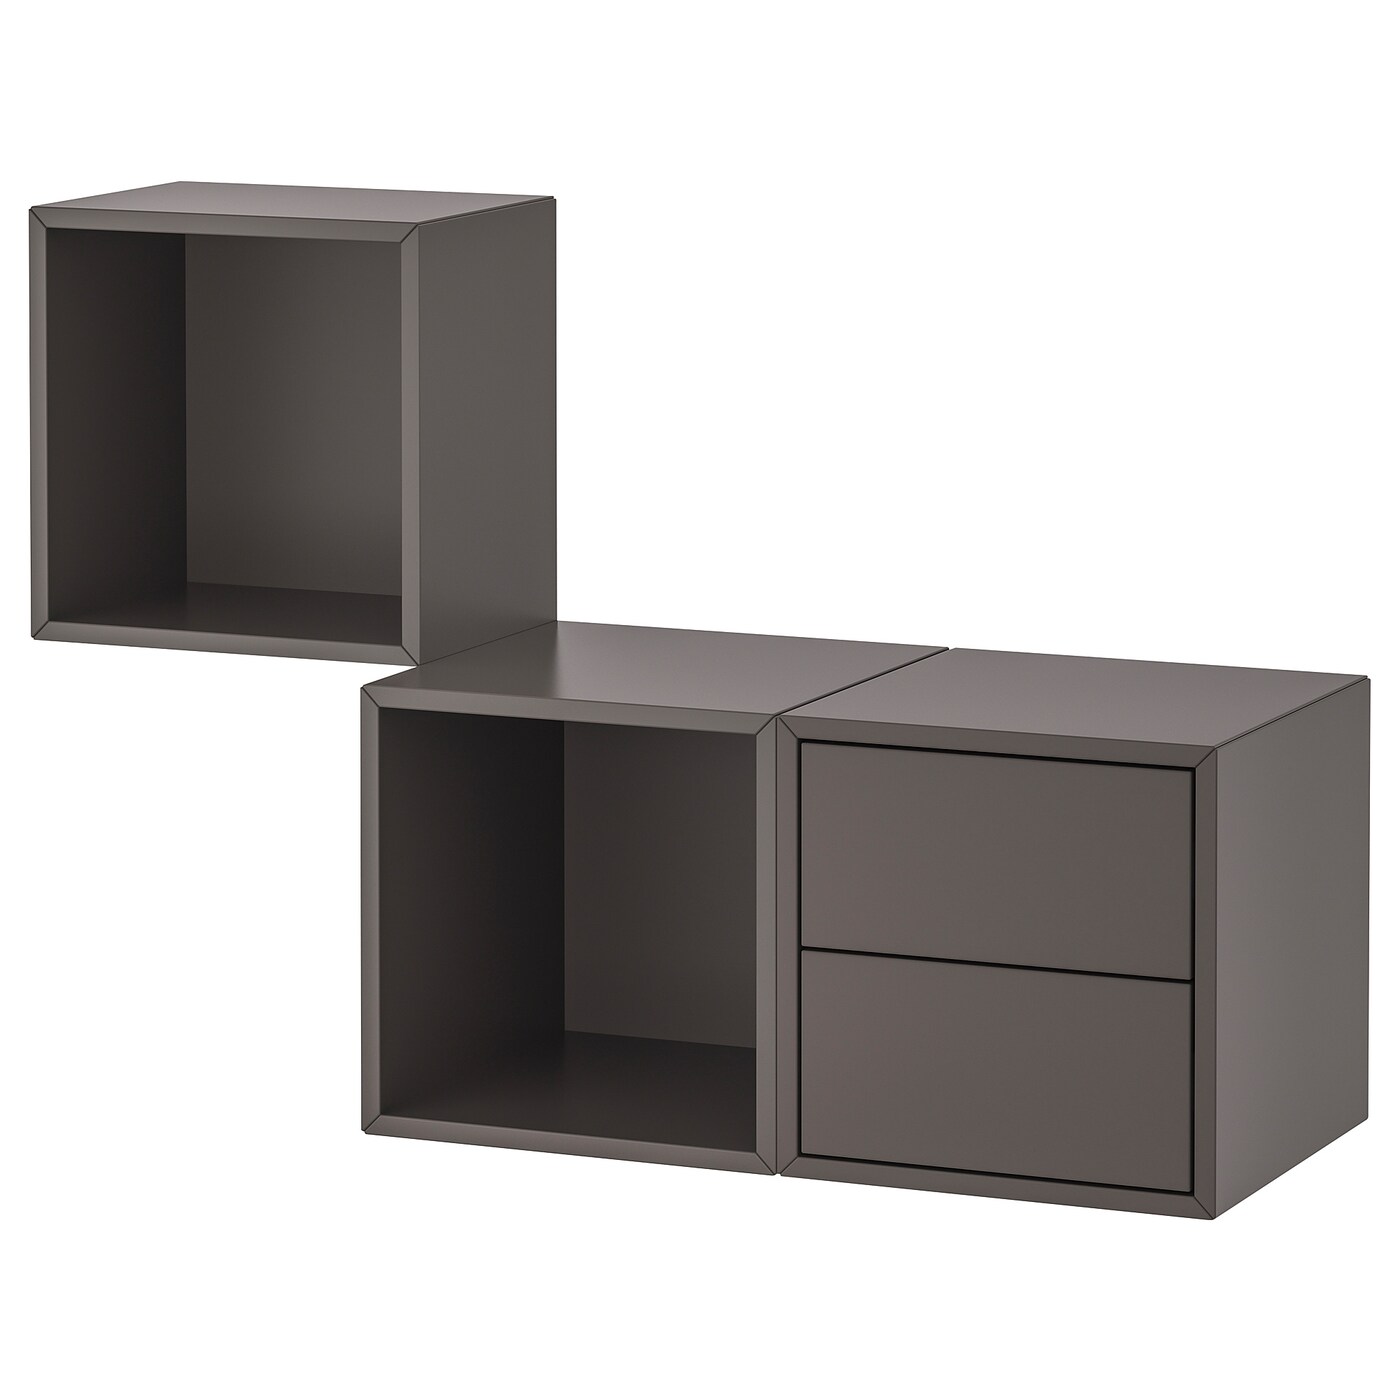 Комбинация навесных шкафов - IKEA EKET, 105x35x70 см, темно-серый, ЭКЕТ ИКЕА